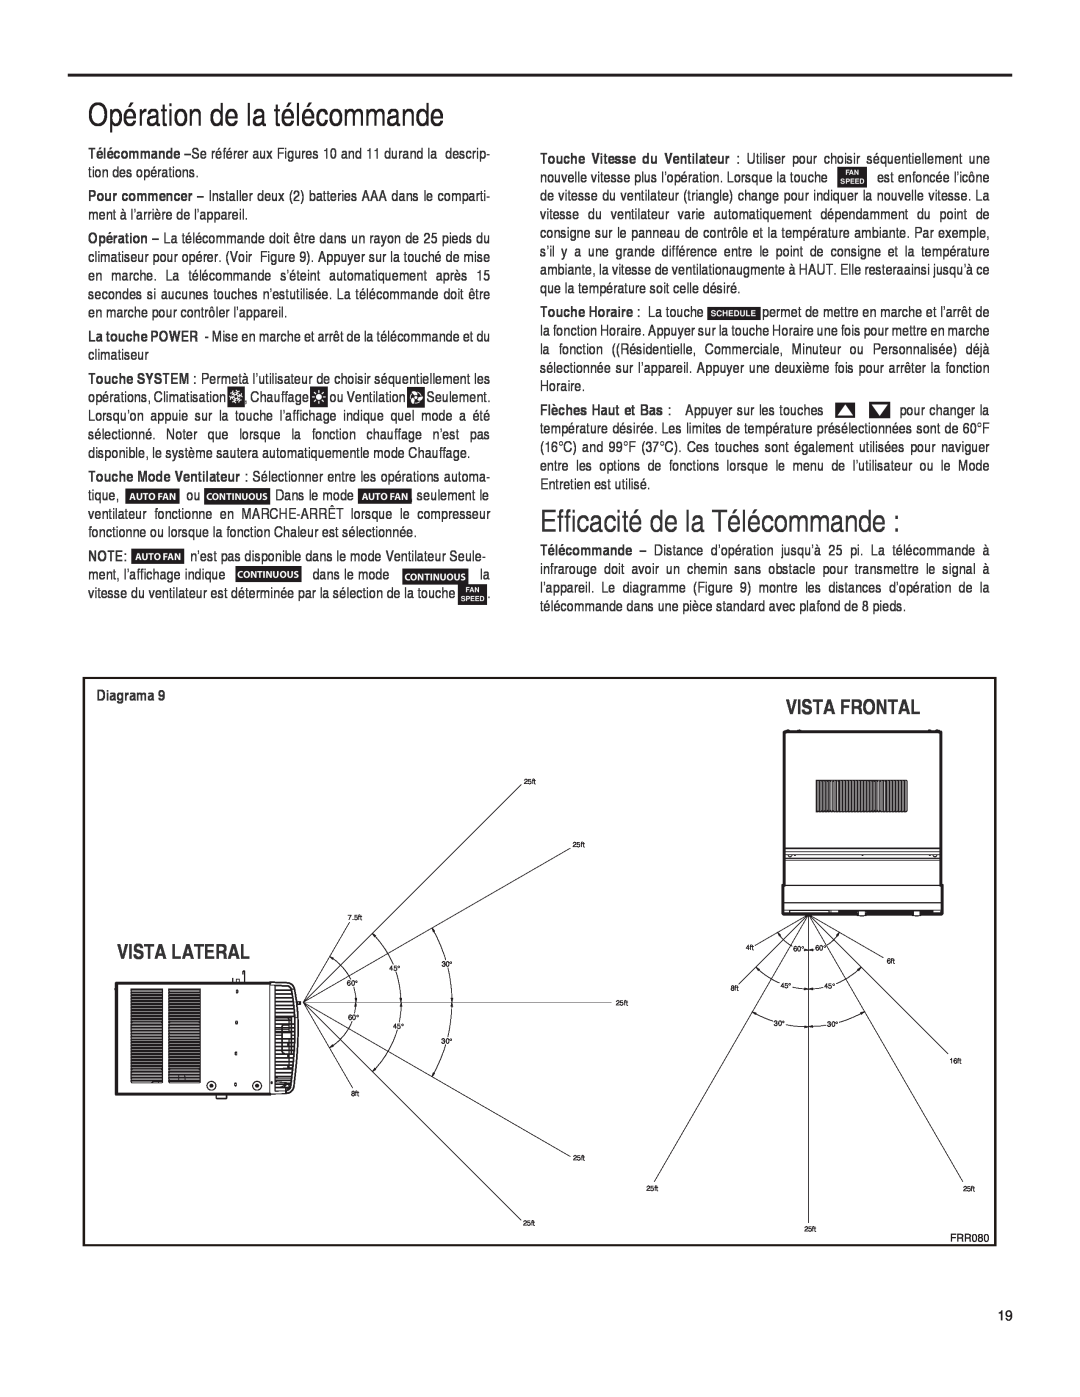 Friedrich SQ08, SQ10, SQ06, SQ05 operation manual Efficacité de la Télécommande, Opération de la télécommande, Diagrama 